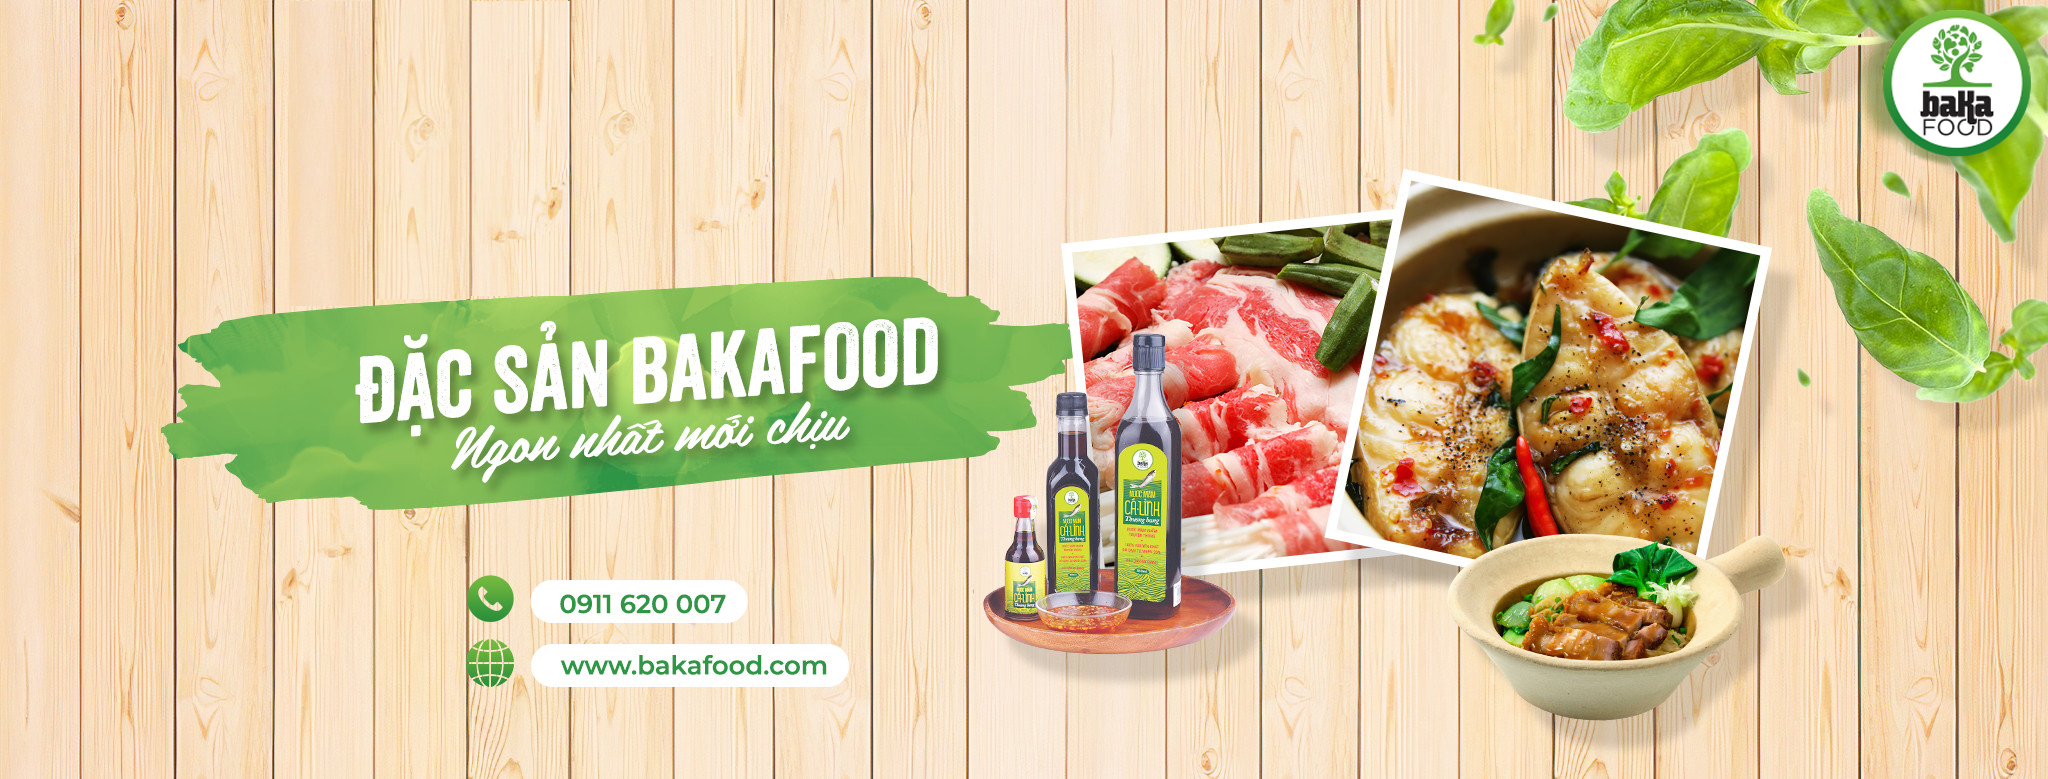 Bakafood – điểm mua thực phẩm sạch, an toàn và chất lượng